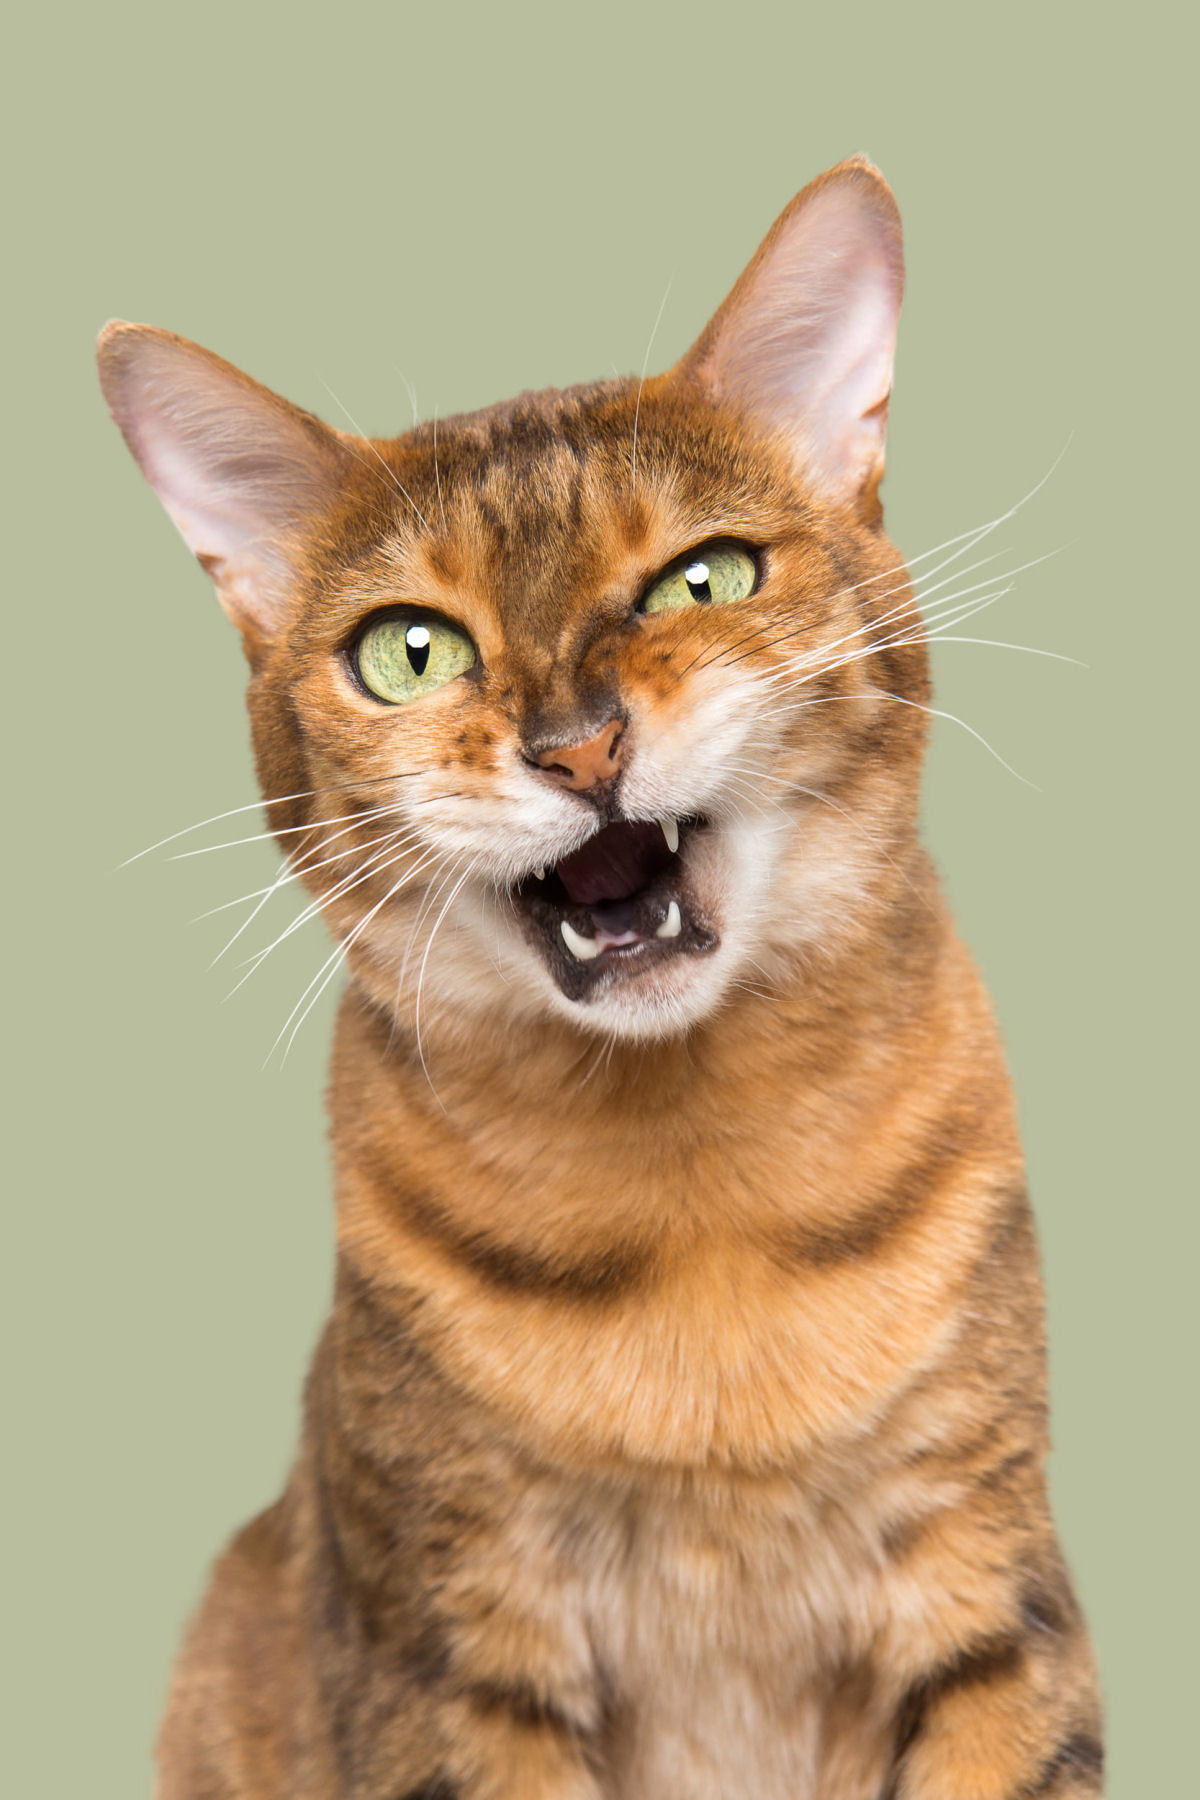 Fotos engraçadas revelam as emoções mal-humoradas e apatetadas de gatos 03